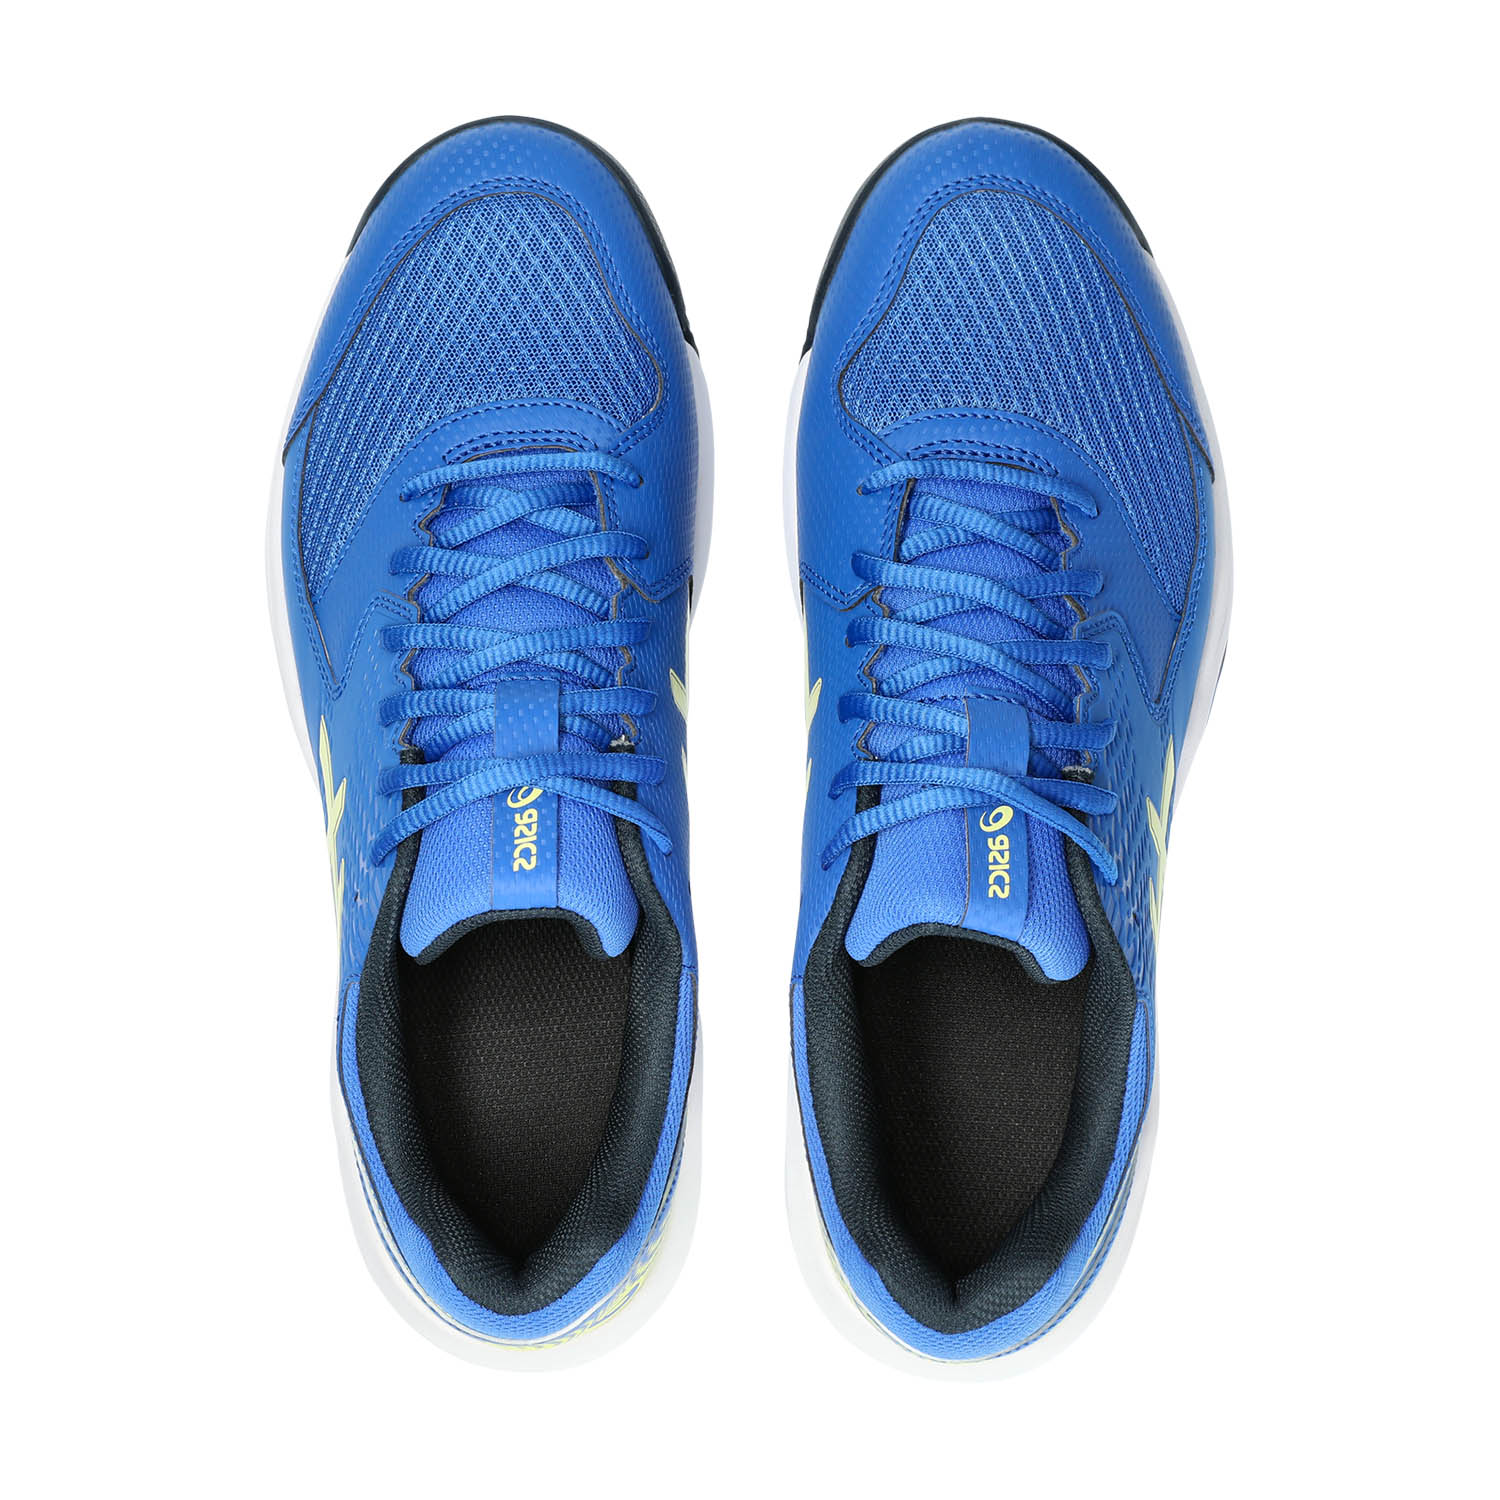 Asics Gel Dedicate 8 Padel Men's Padel Shoes - Illusion Blue